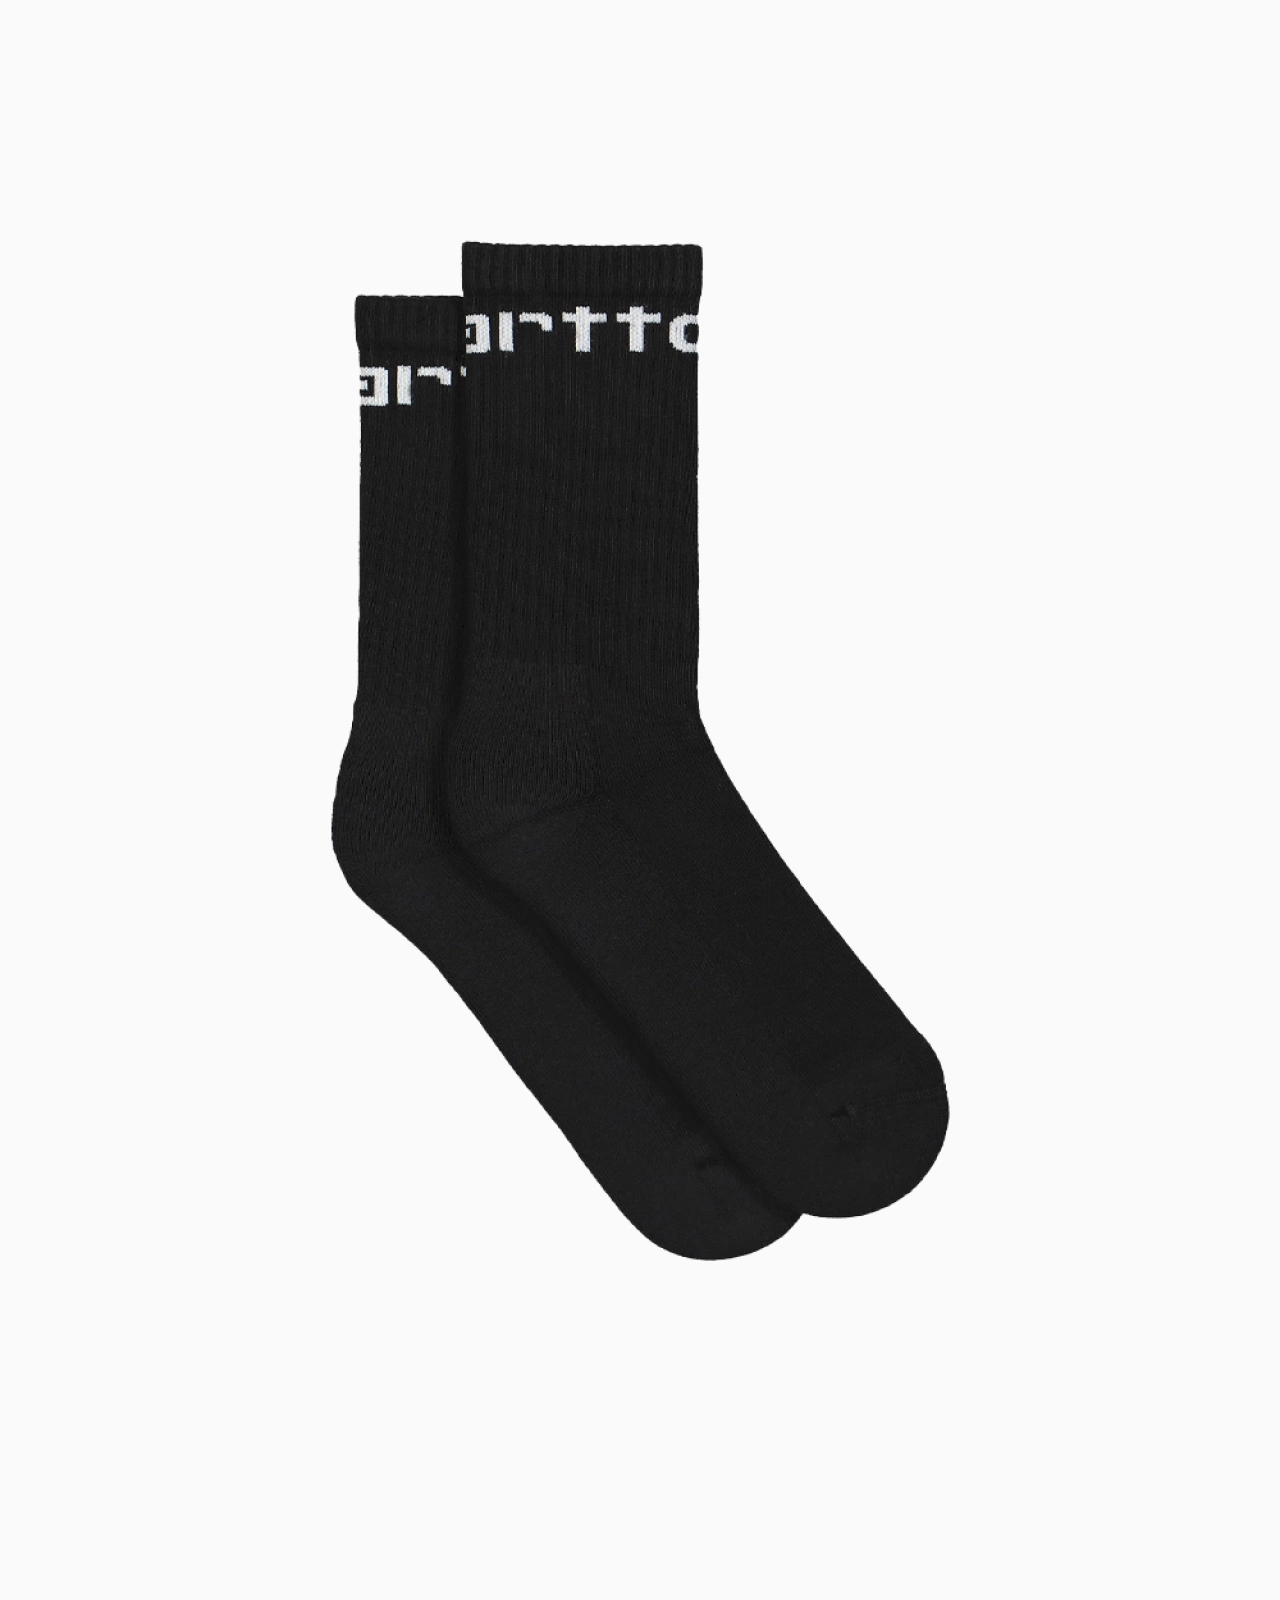 Carhartt Wip: Носки Carhartt WIP Socks